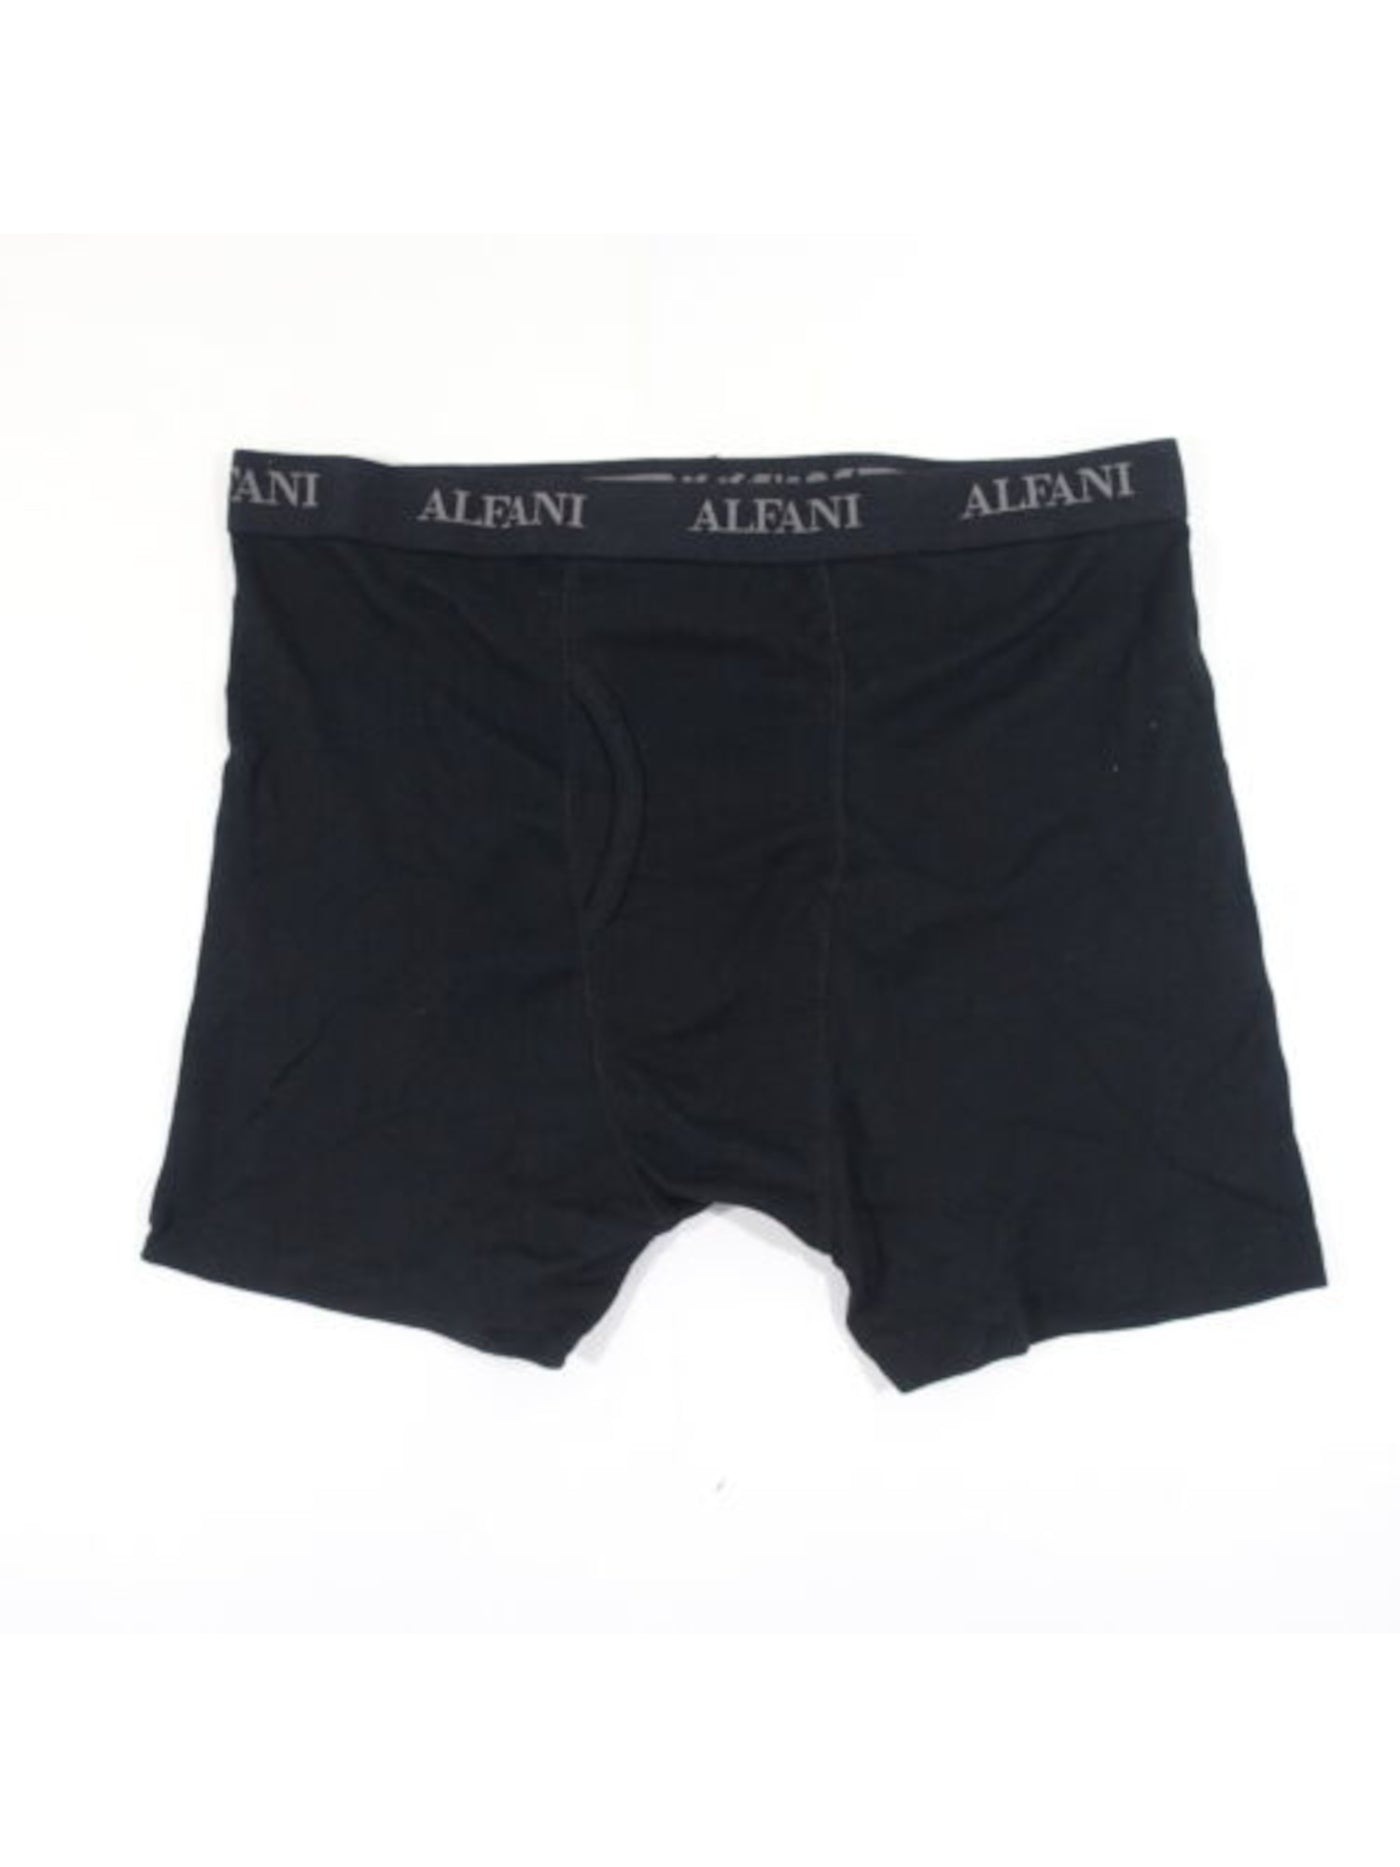 ALFATECH BY ALFANI Intimates Black Mesh Quick-Dry Boxer Brief Underwear S